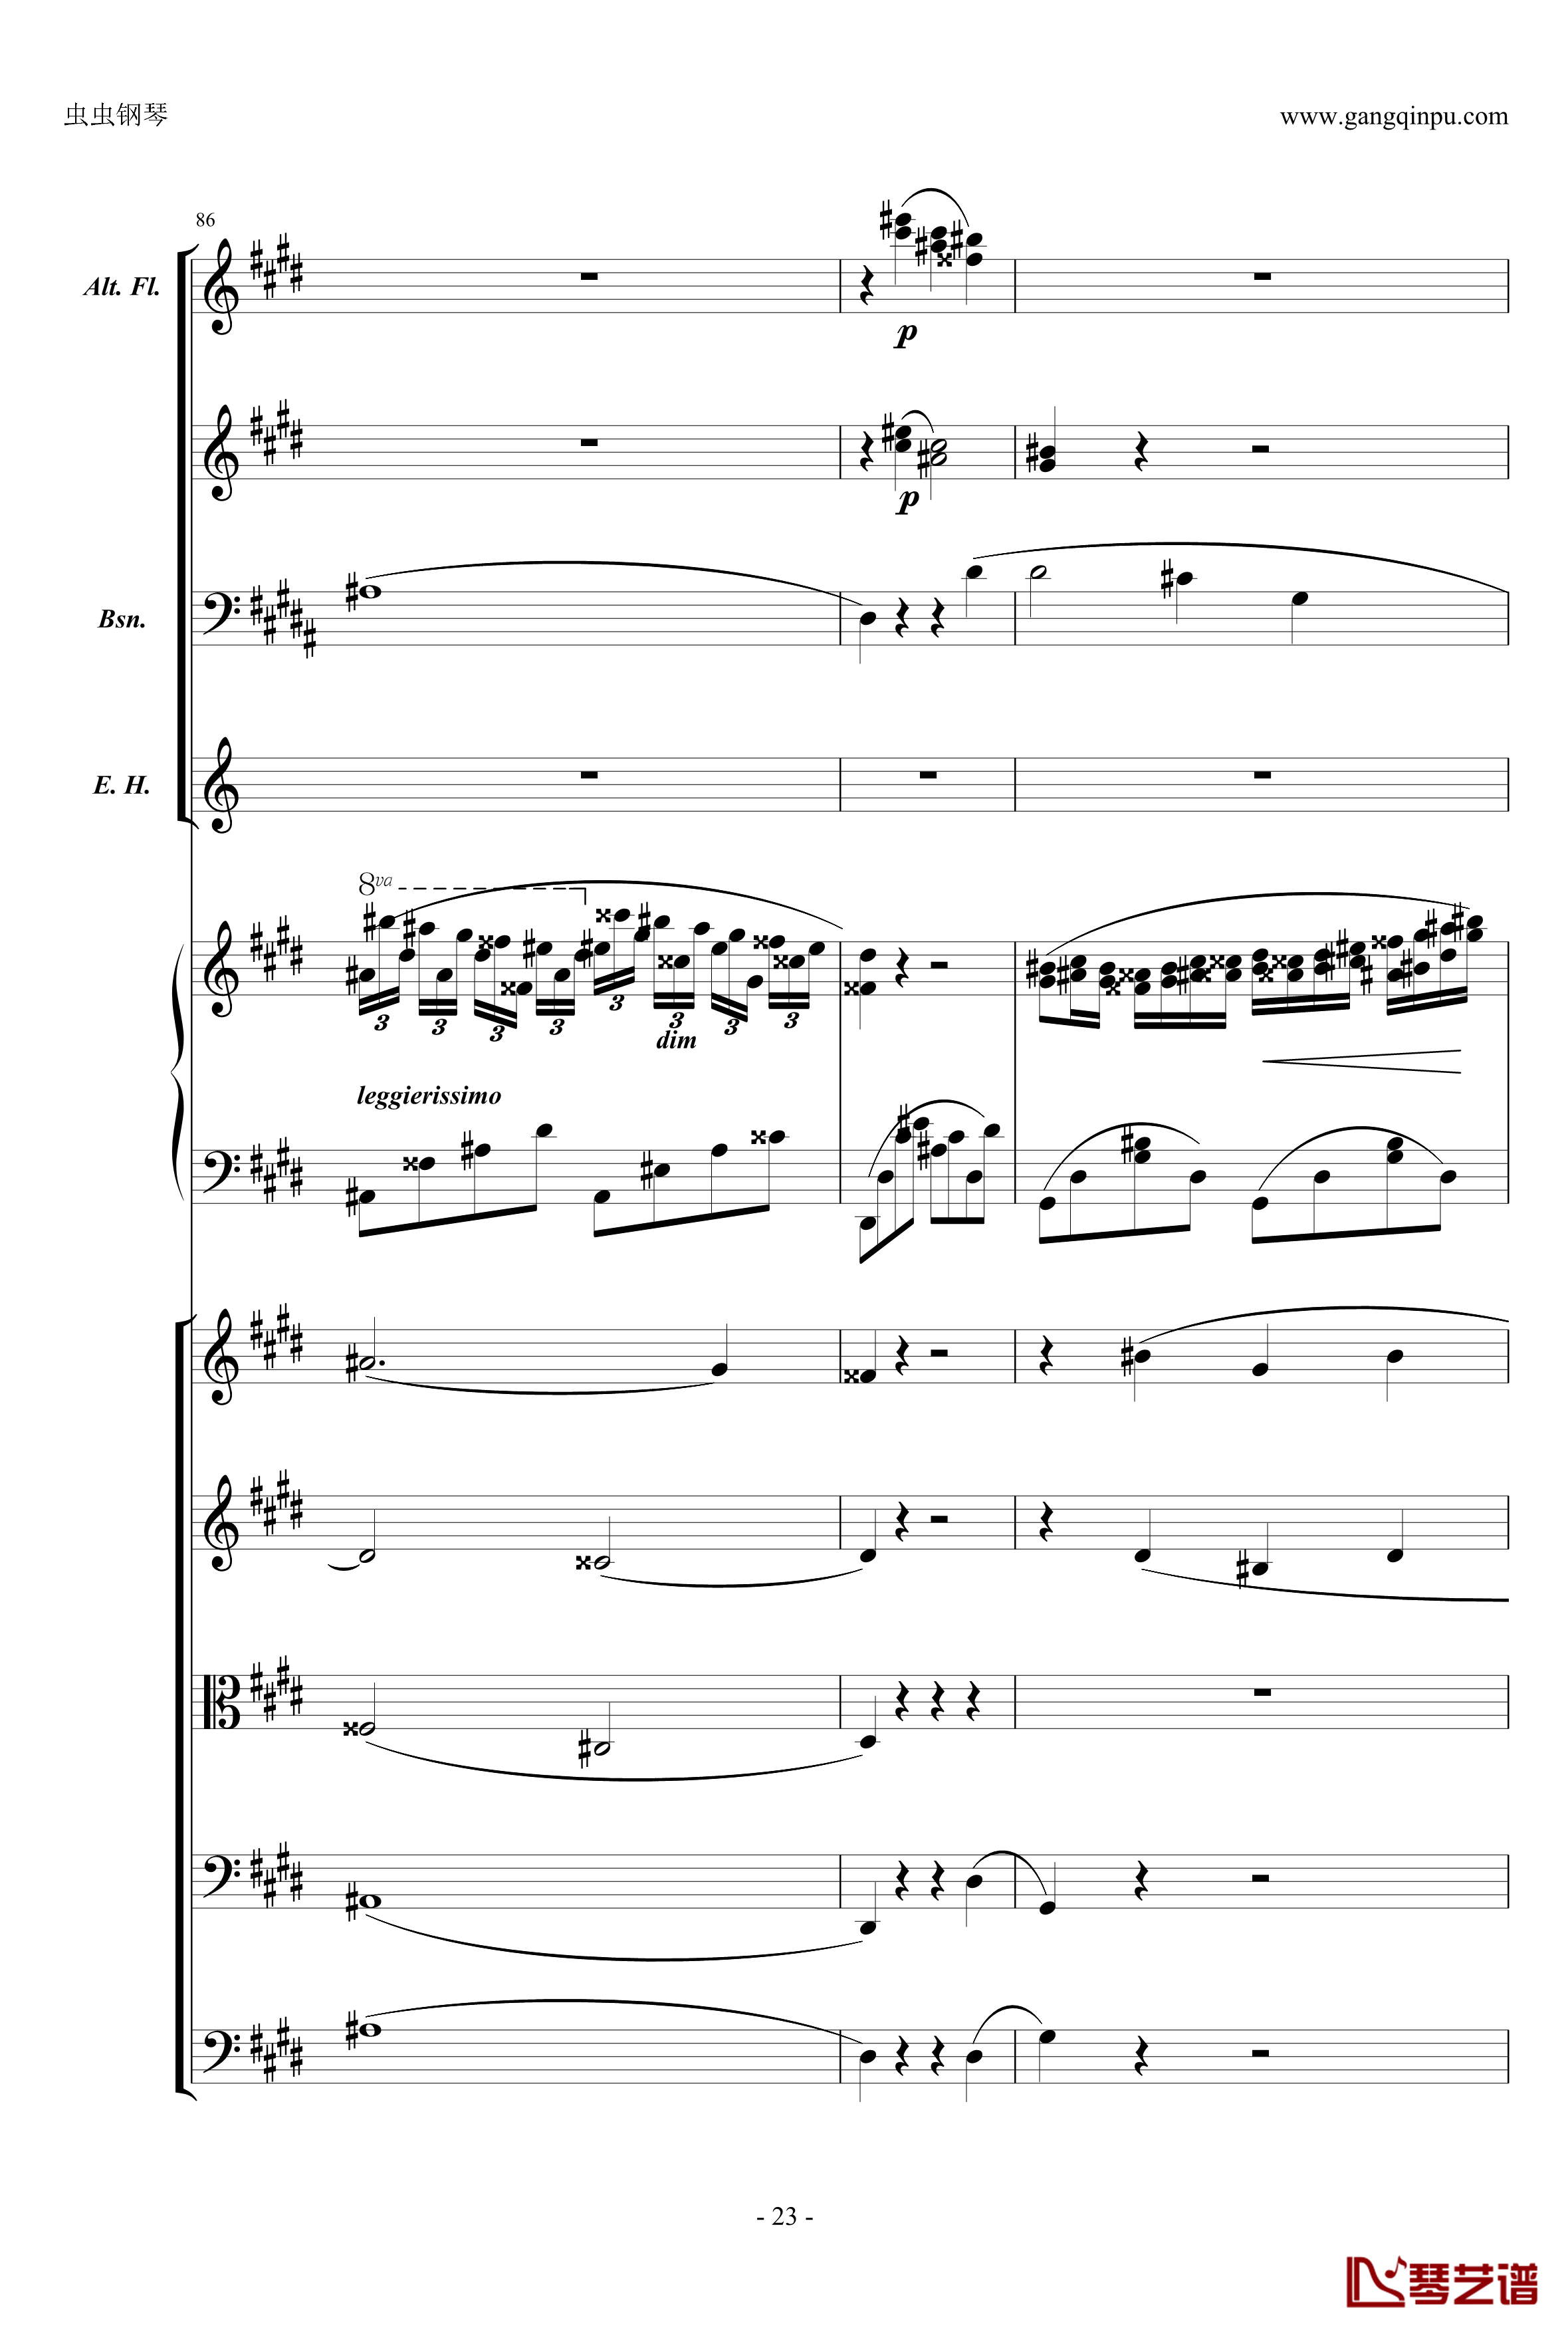 萧邦第一钢琴协奏曲第二乐章钢琴谱-肖邦-chopin23